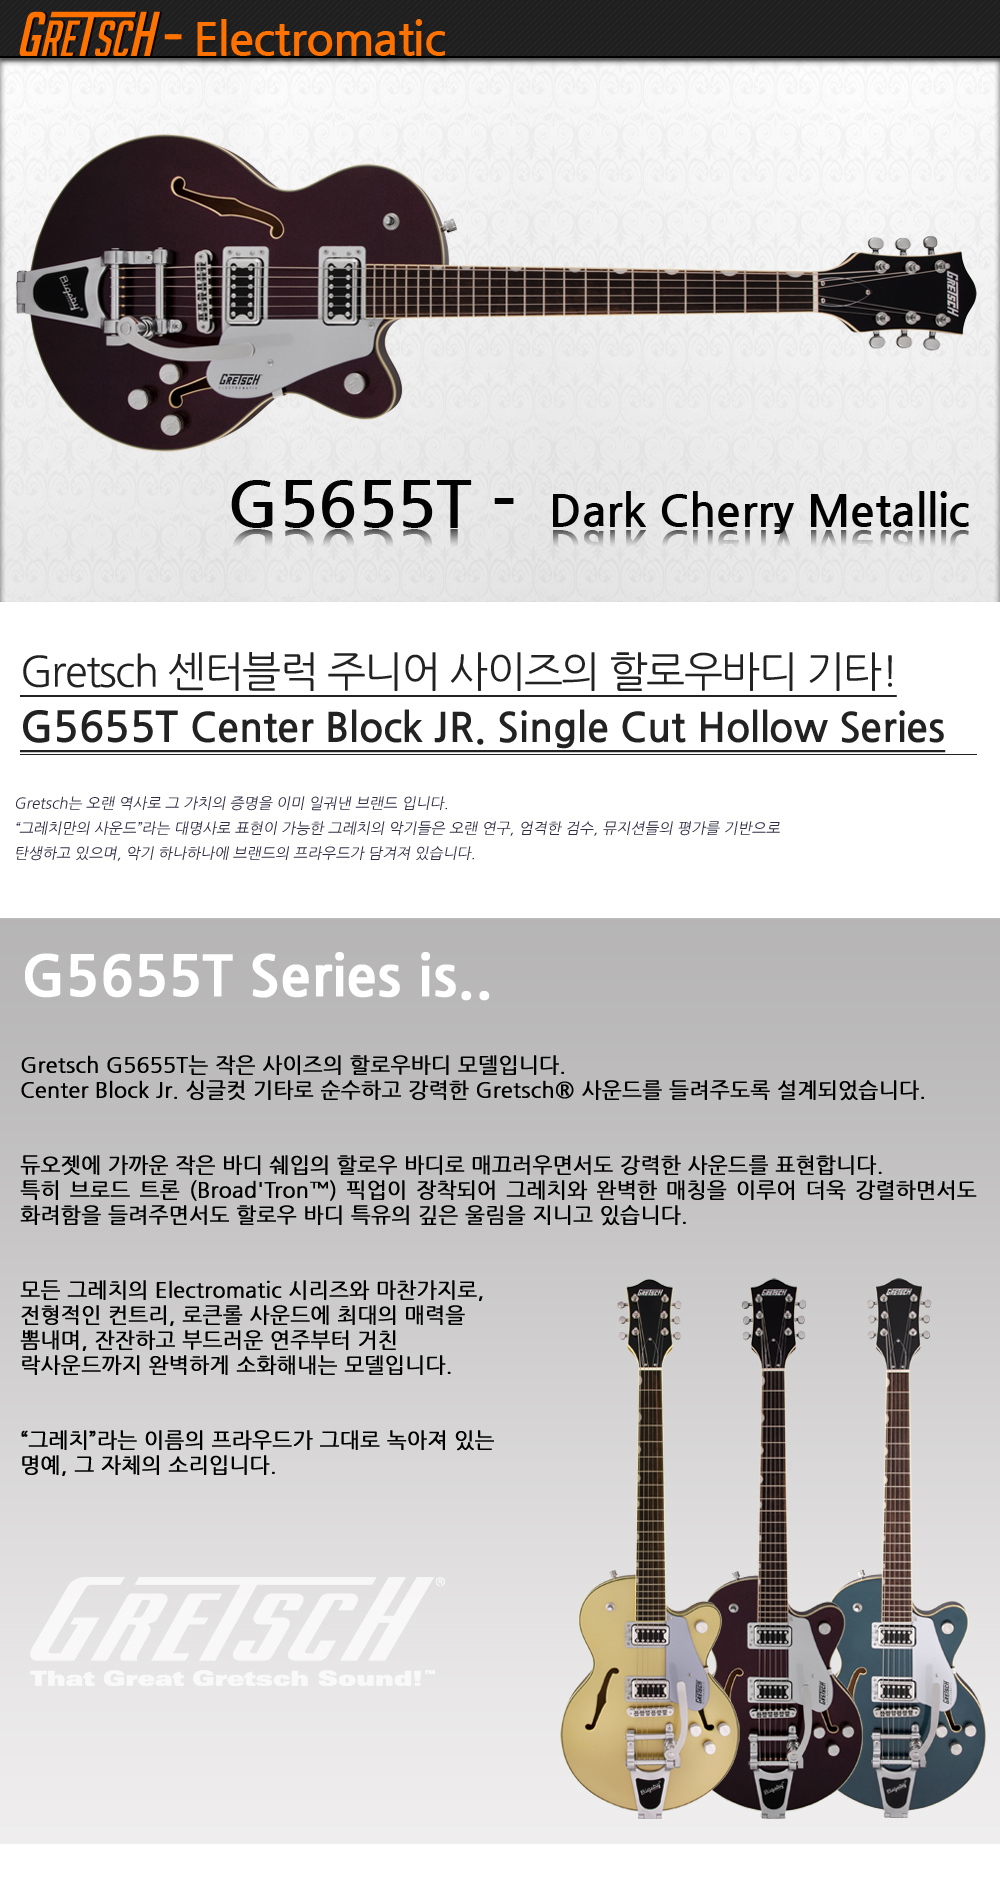 Gretsch-G5655T-DarkCherryMetallic_1_103056.jpg